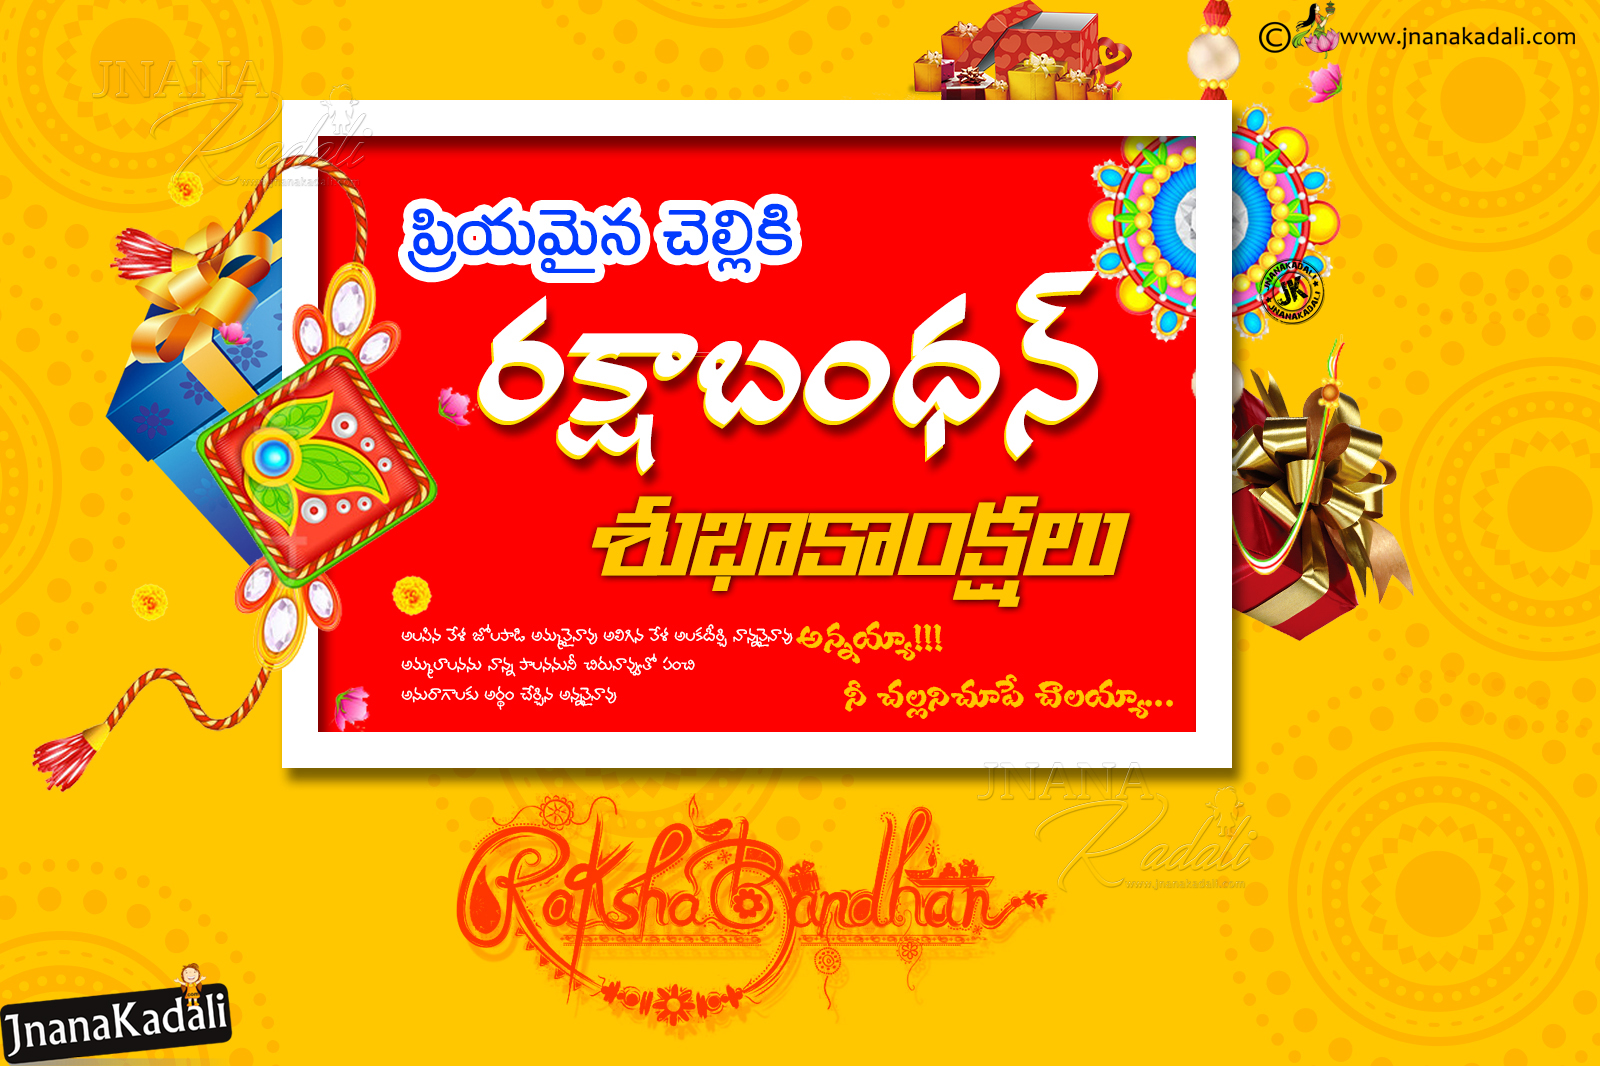 Rakshabandhan Vector Wallpapers With greetings in Telugu Free ...